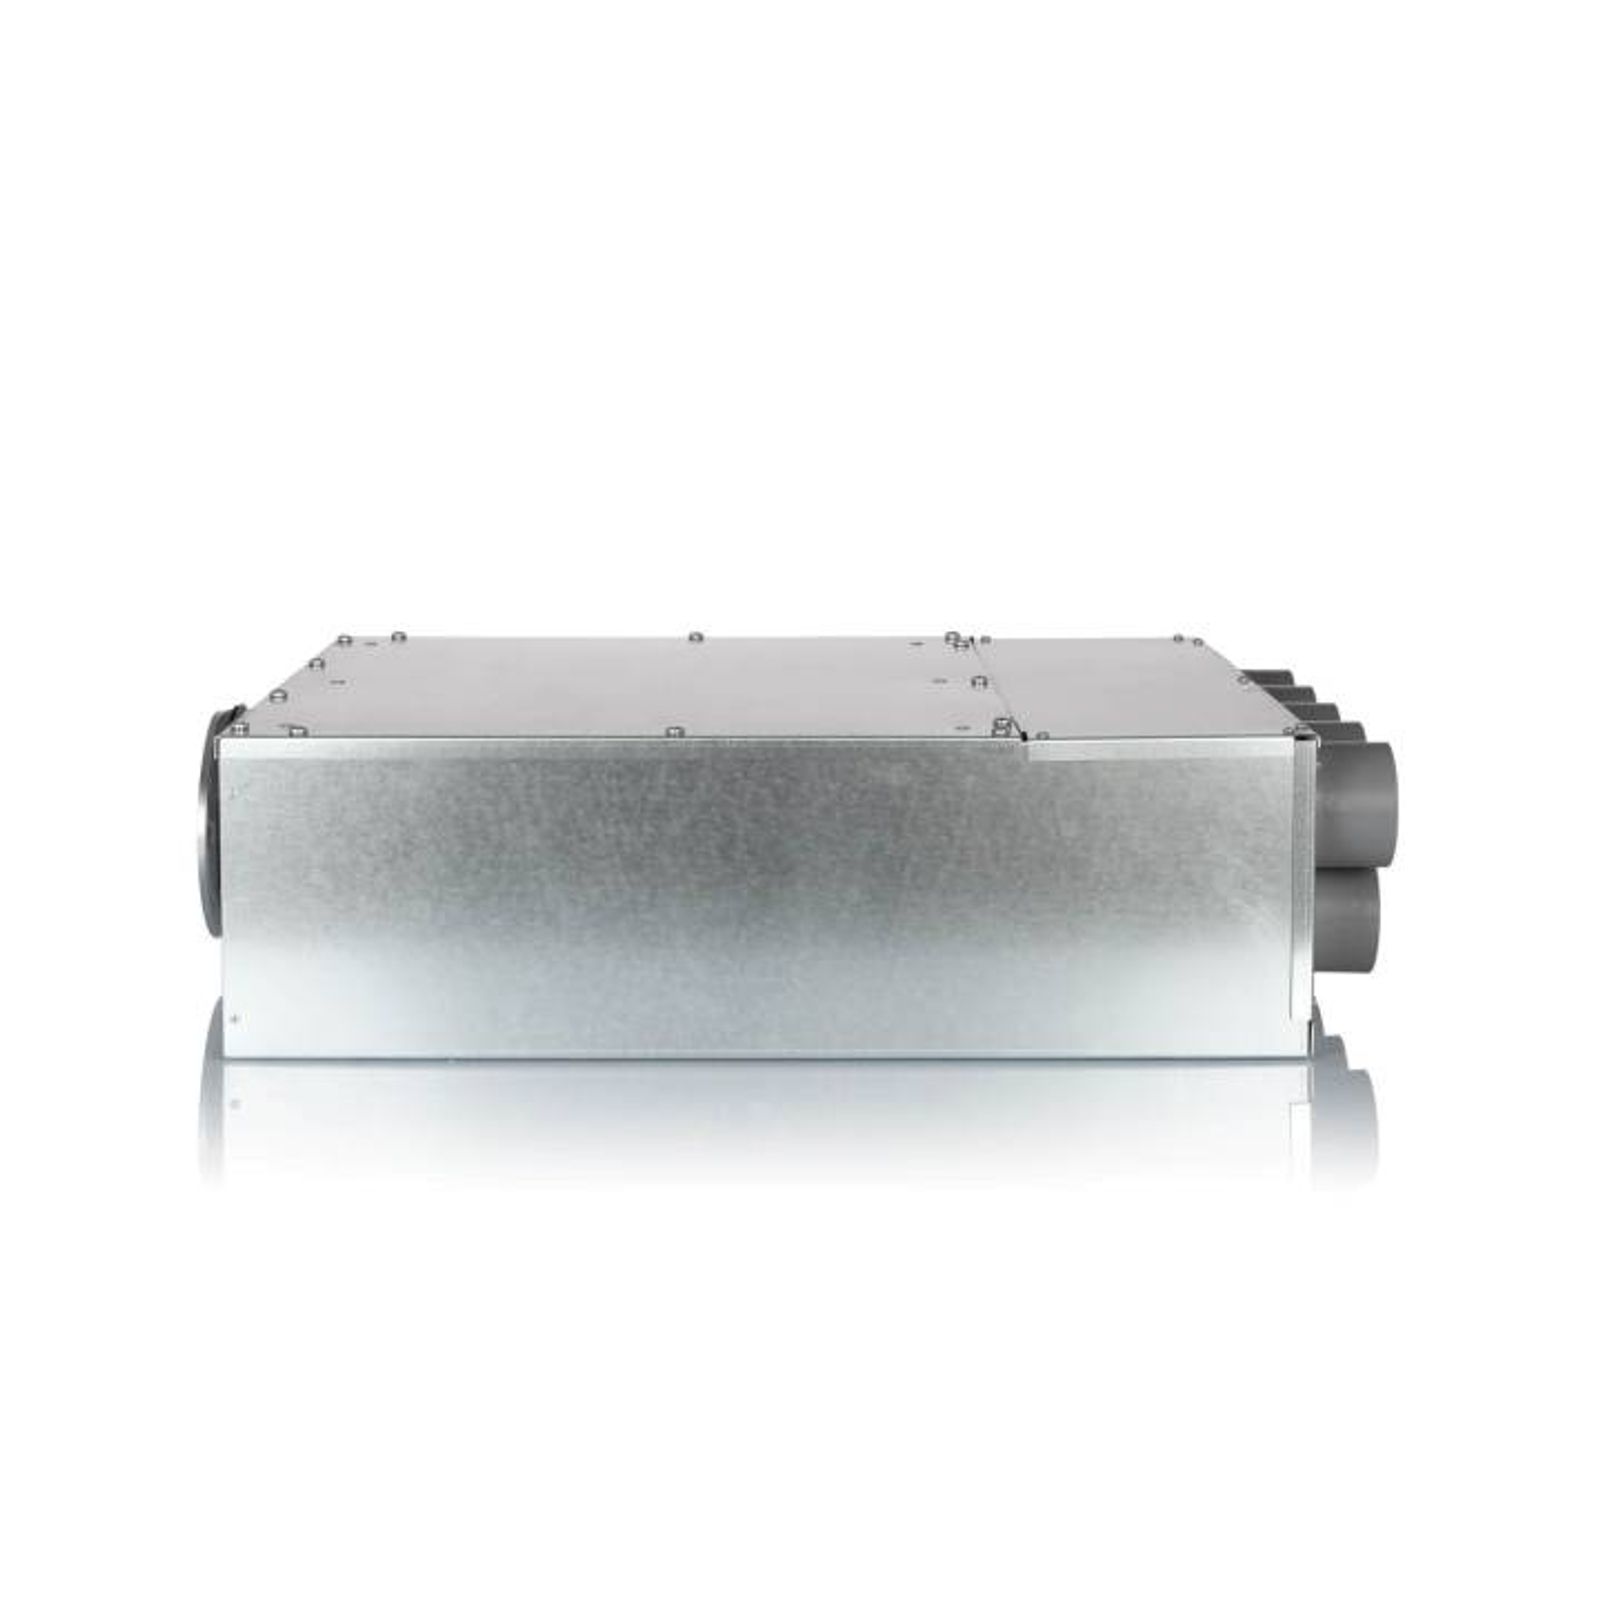 Luftverteiler 10x DN75 für Kunststoff-Flexkanal mit Schalldämpfer DN160